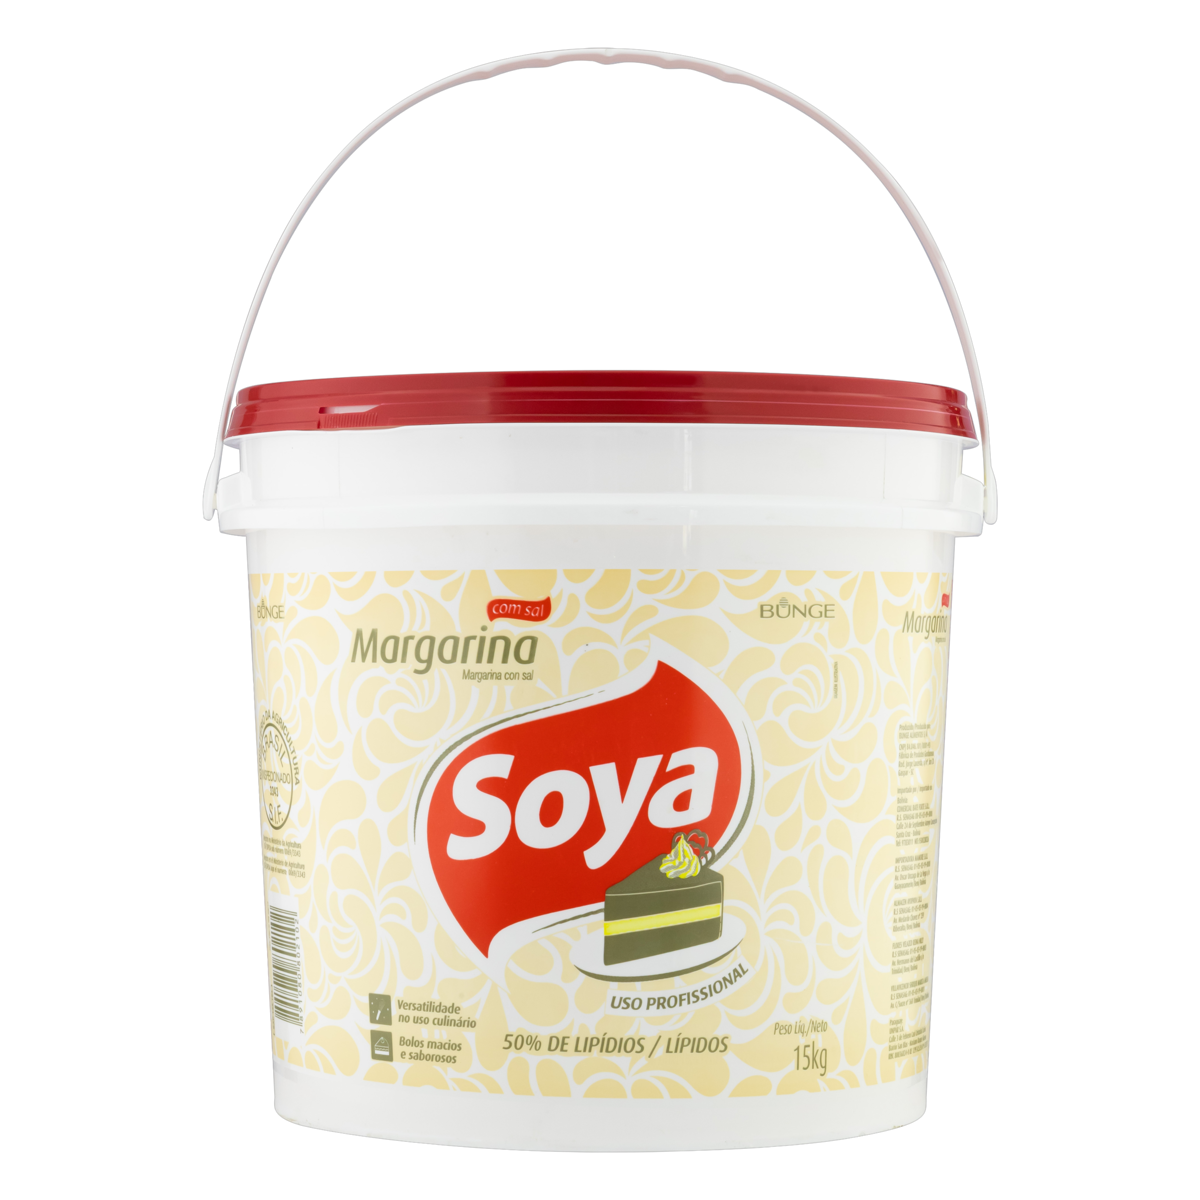 Margarina Becel Original Com Sal 500g - Destro